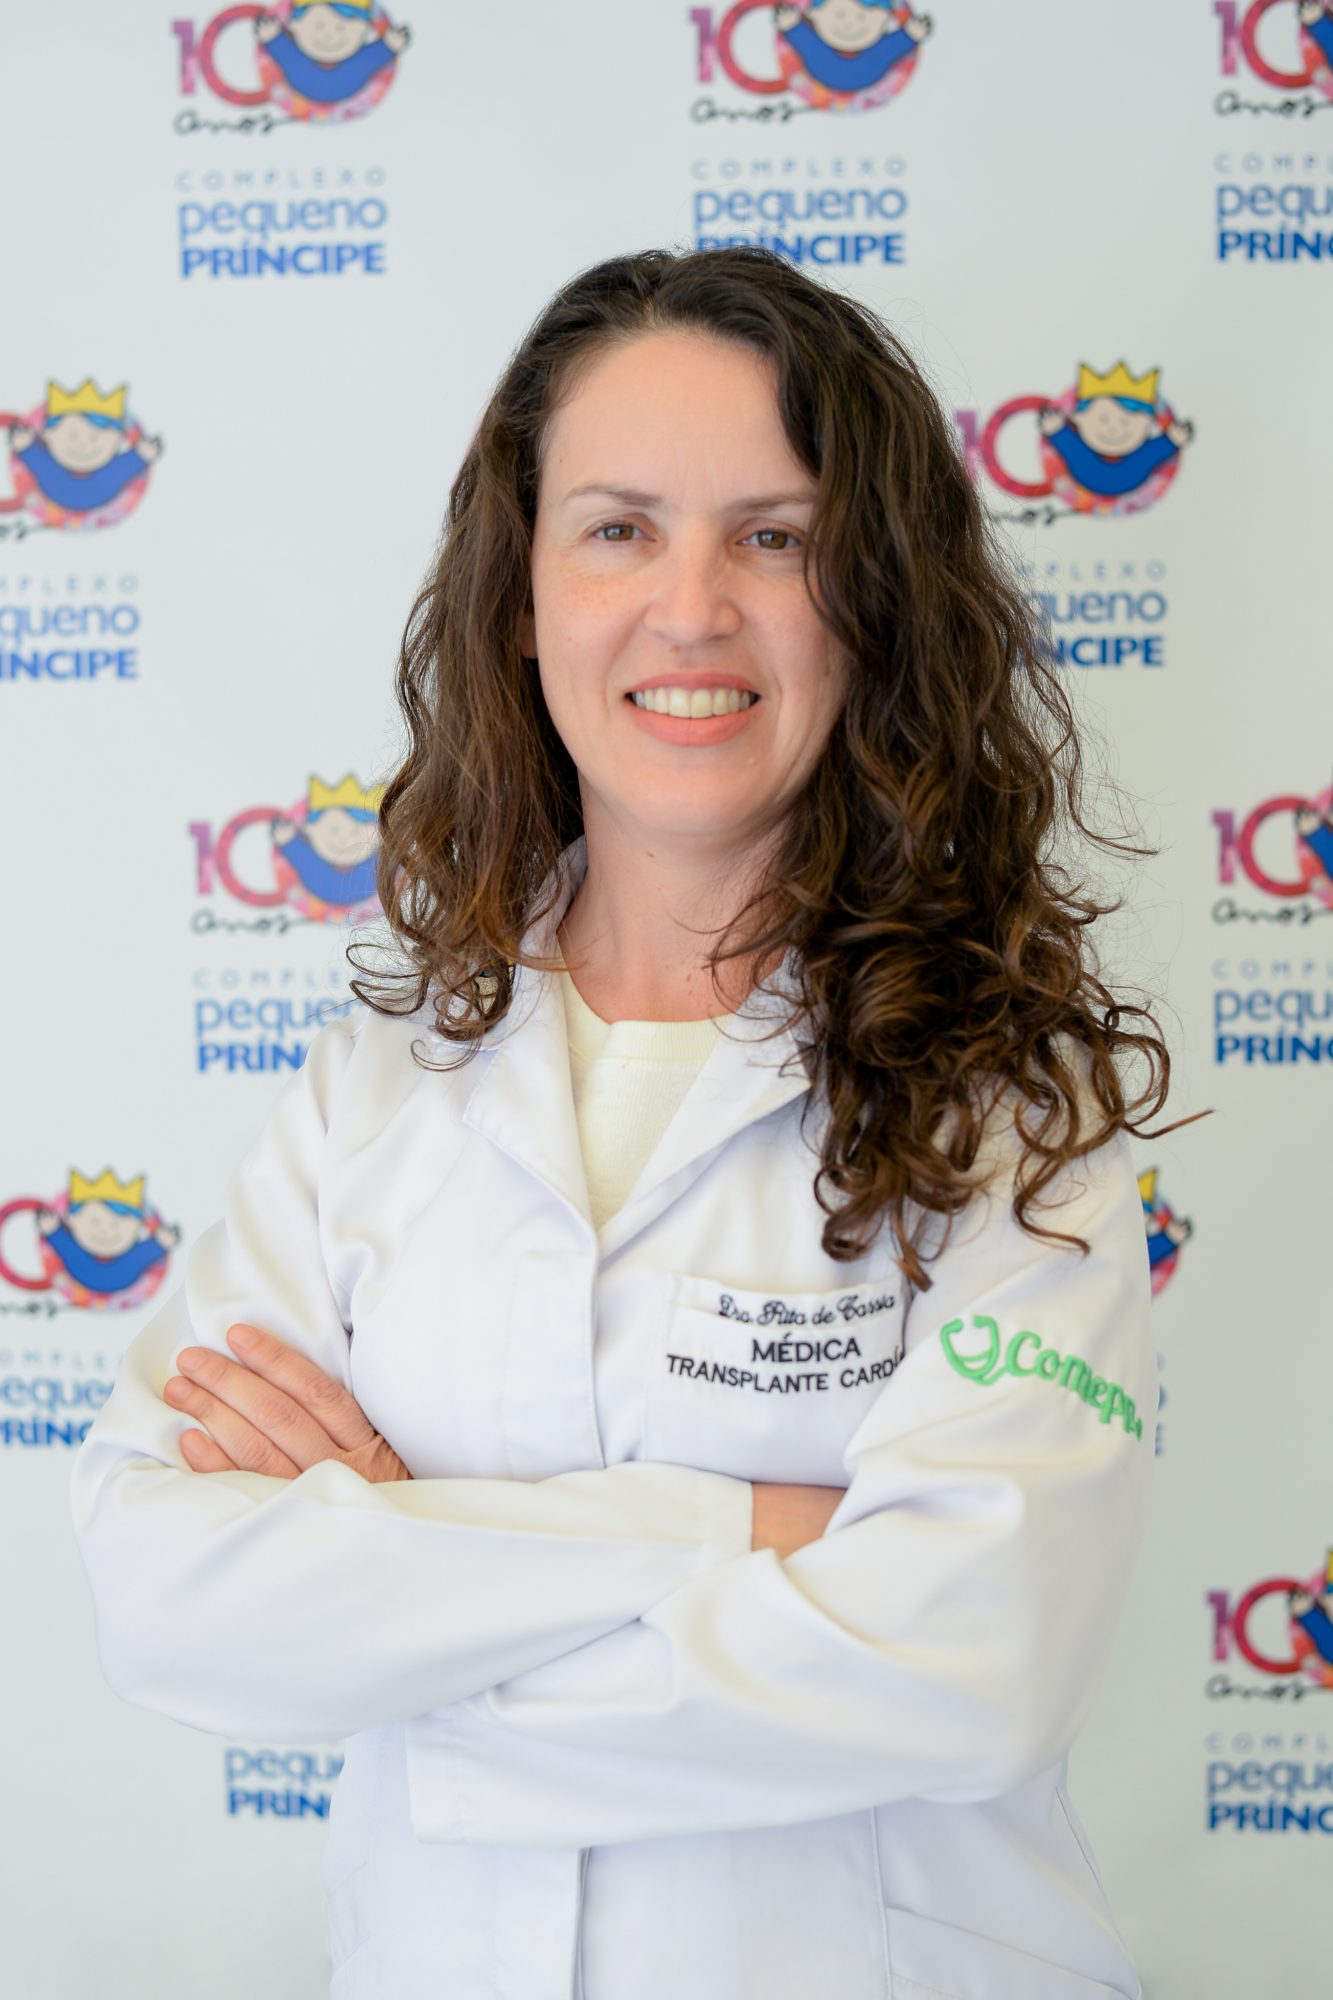 Dra. Rita de Cássia Rodrigues Silva